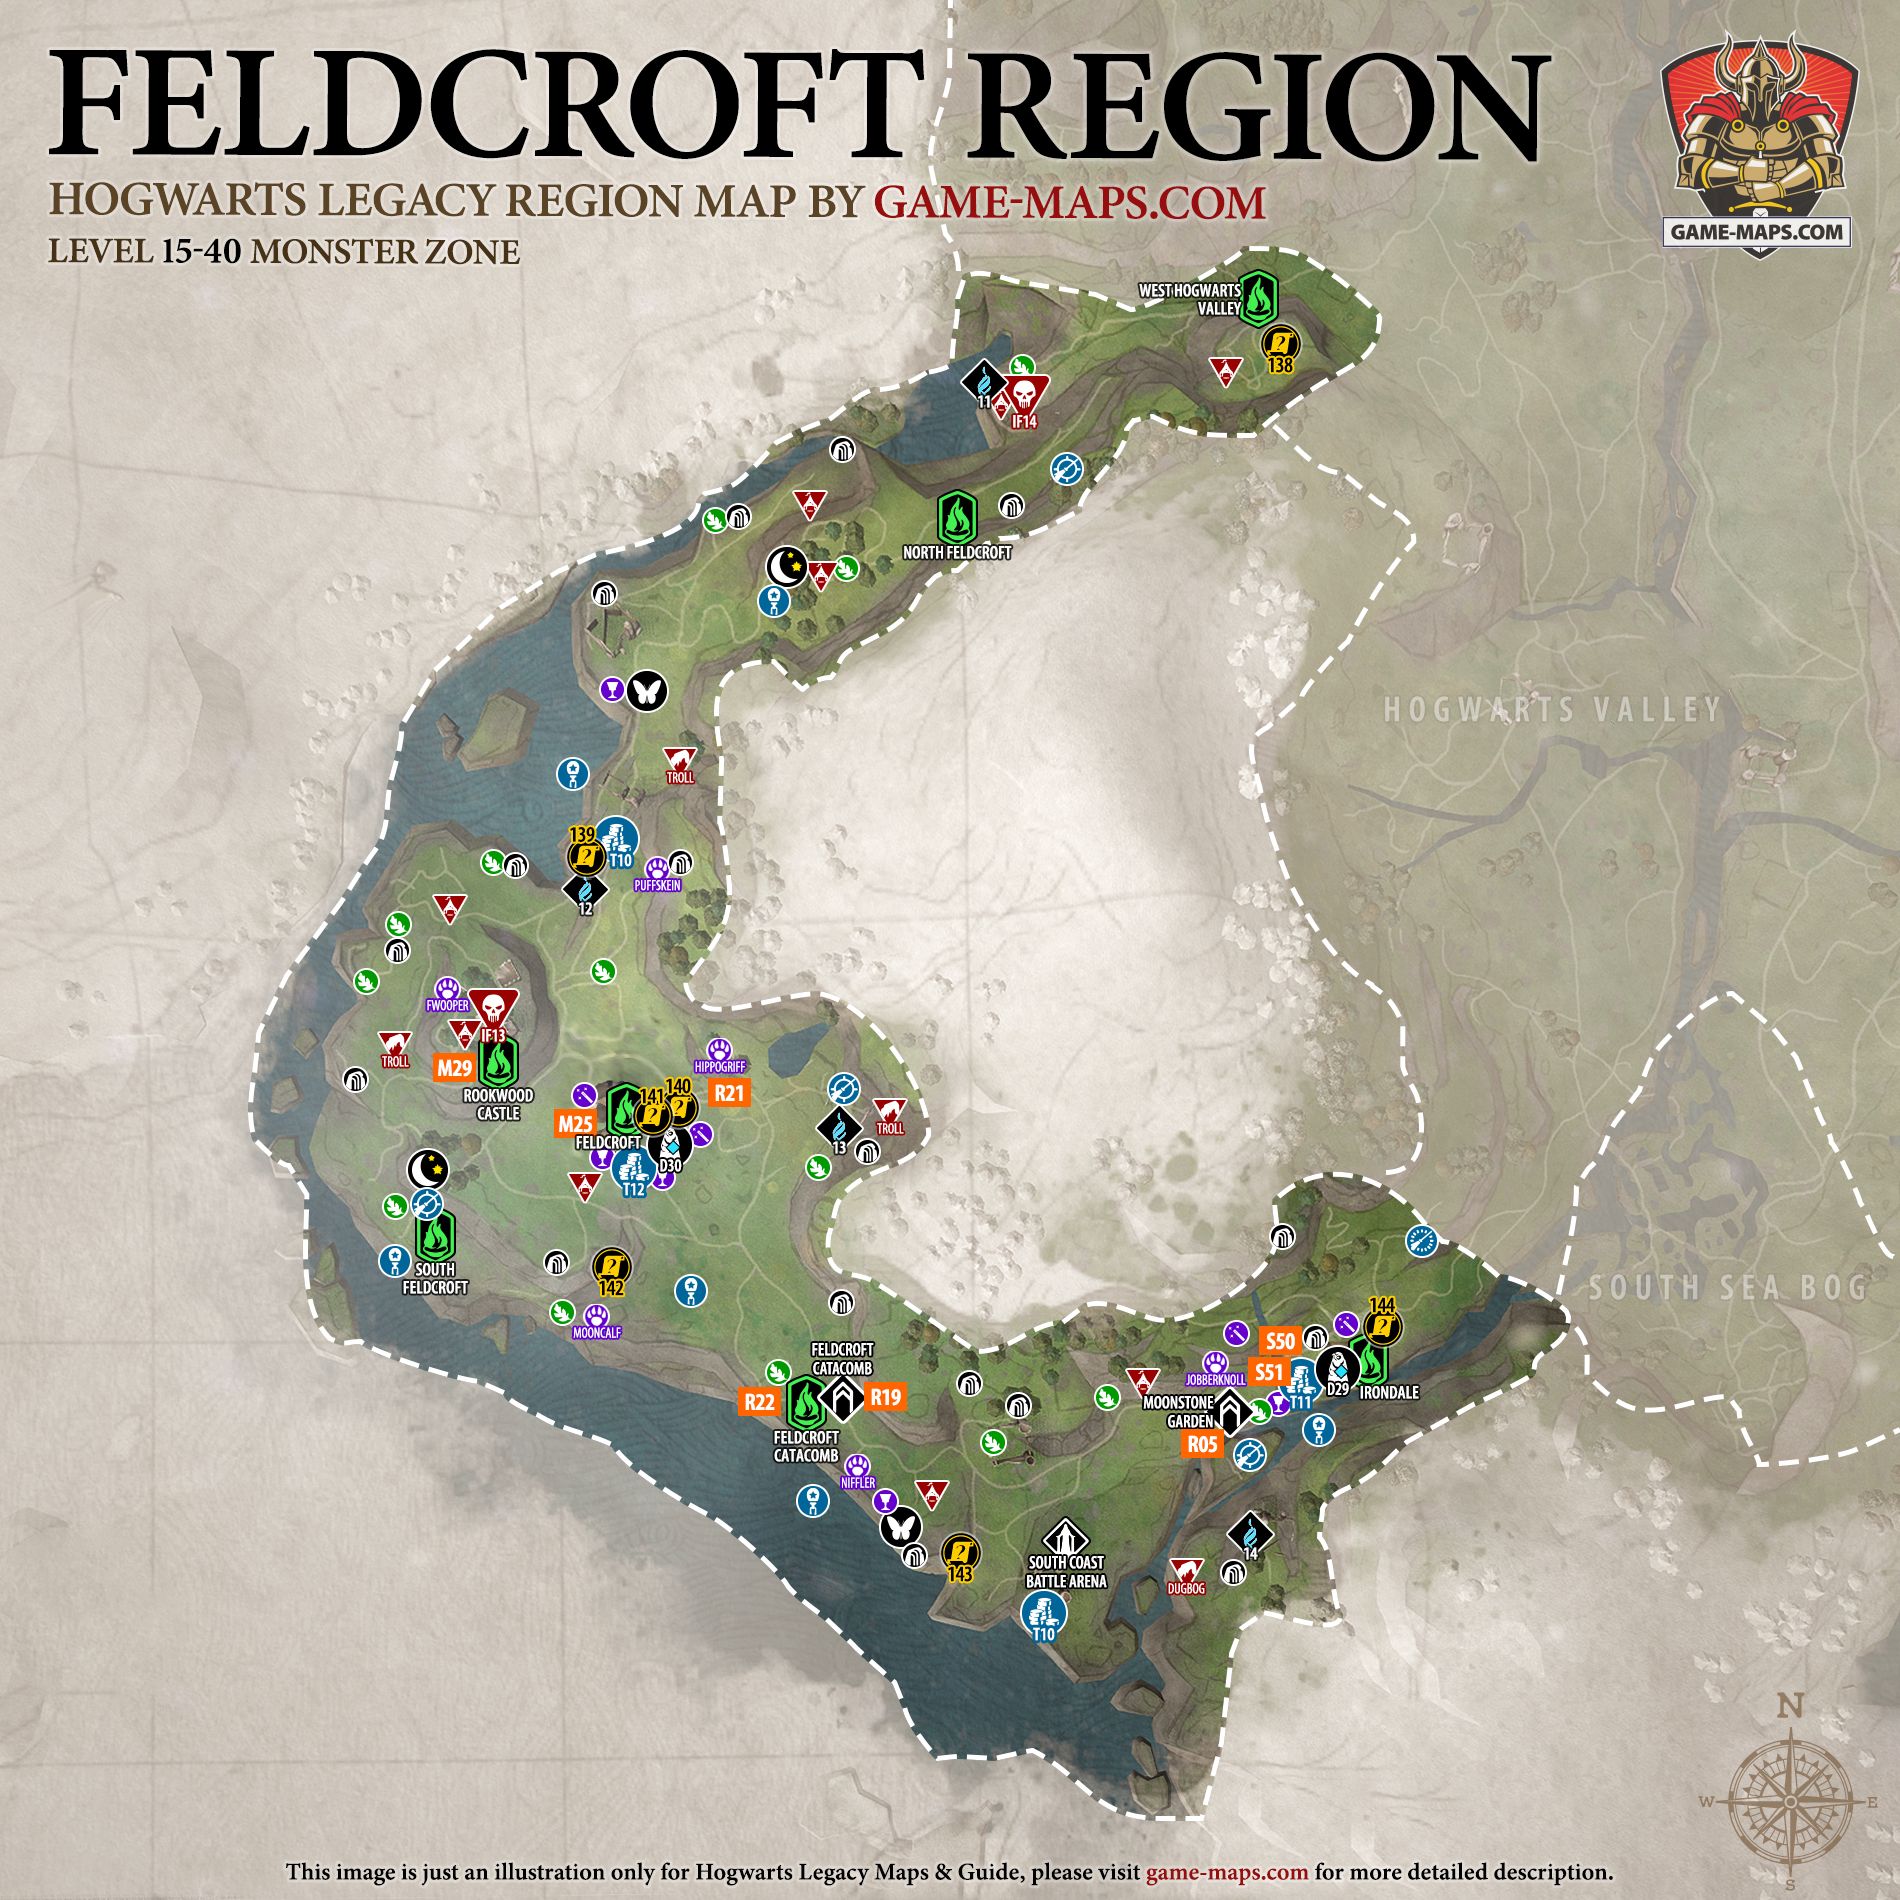 Feldcroft Region Map Hogwarts Legacy